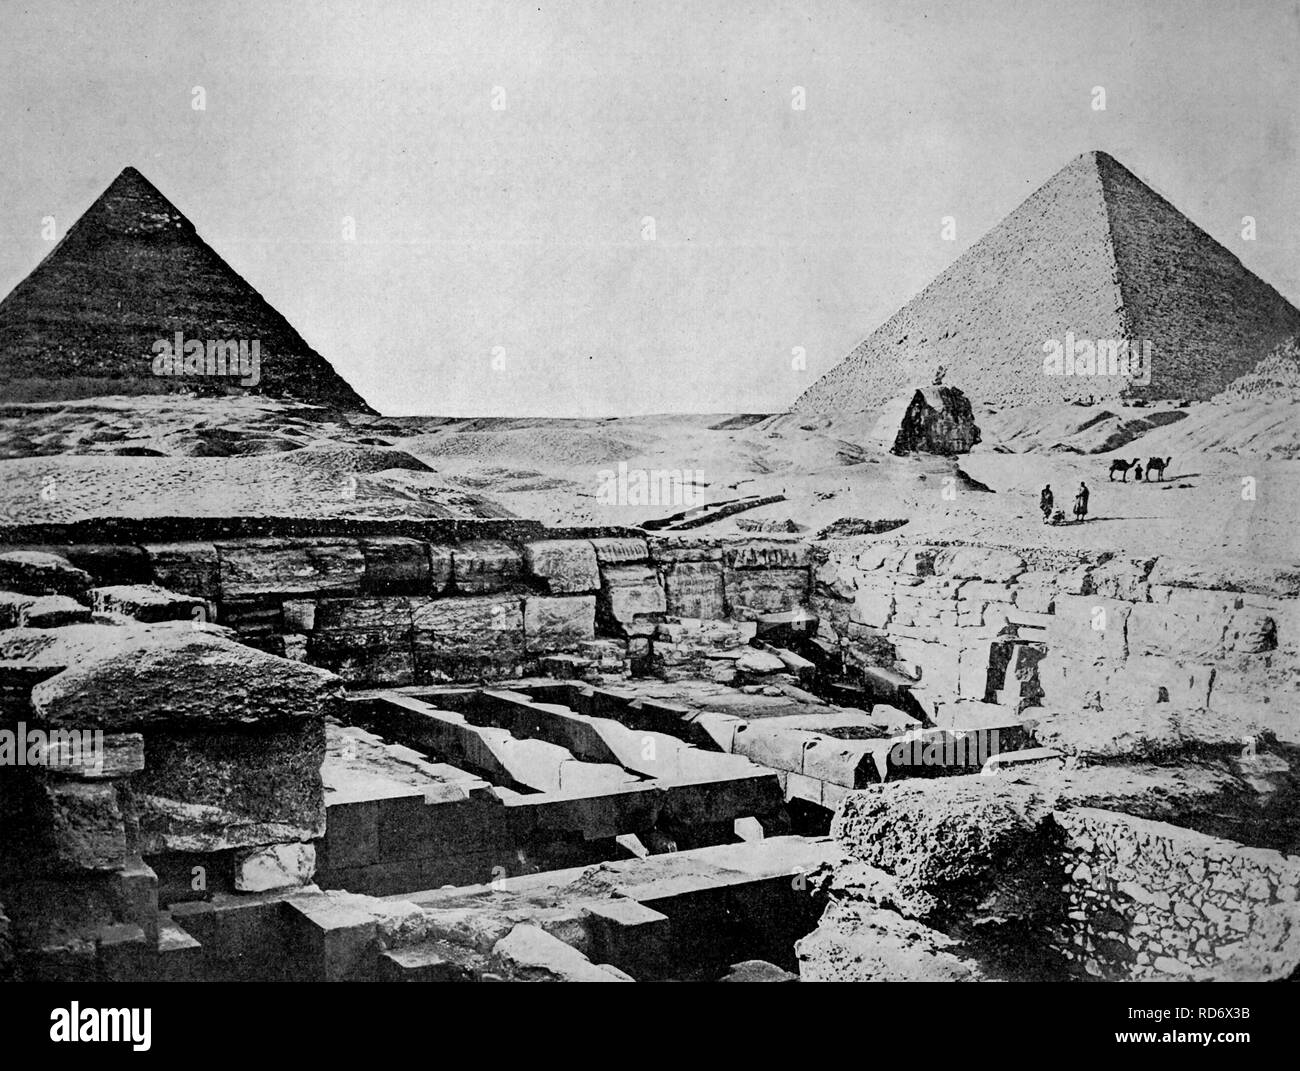 Une des premières photographies d'Autotype des pyramides de Giza, Egypte, circa 1880 Banque D'Images